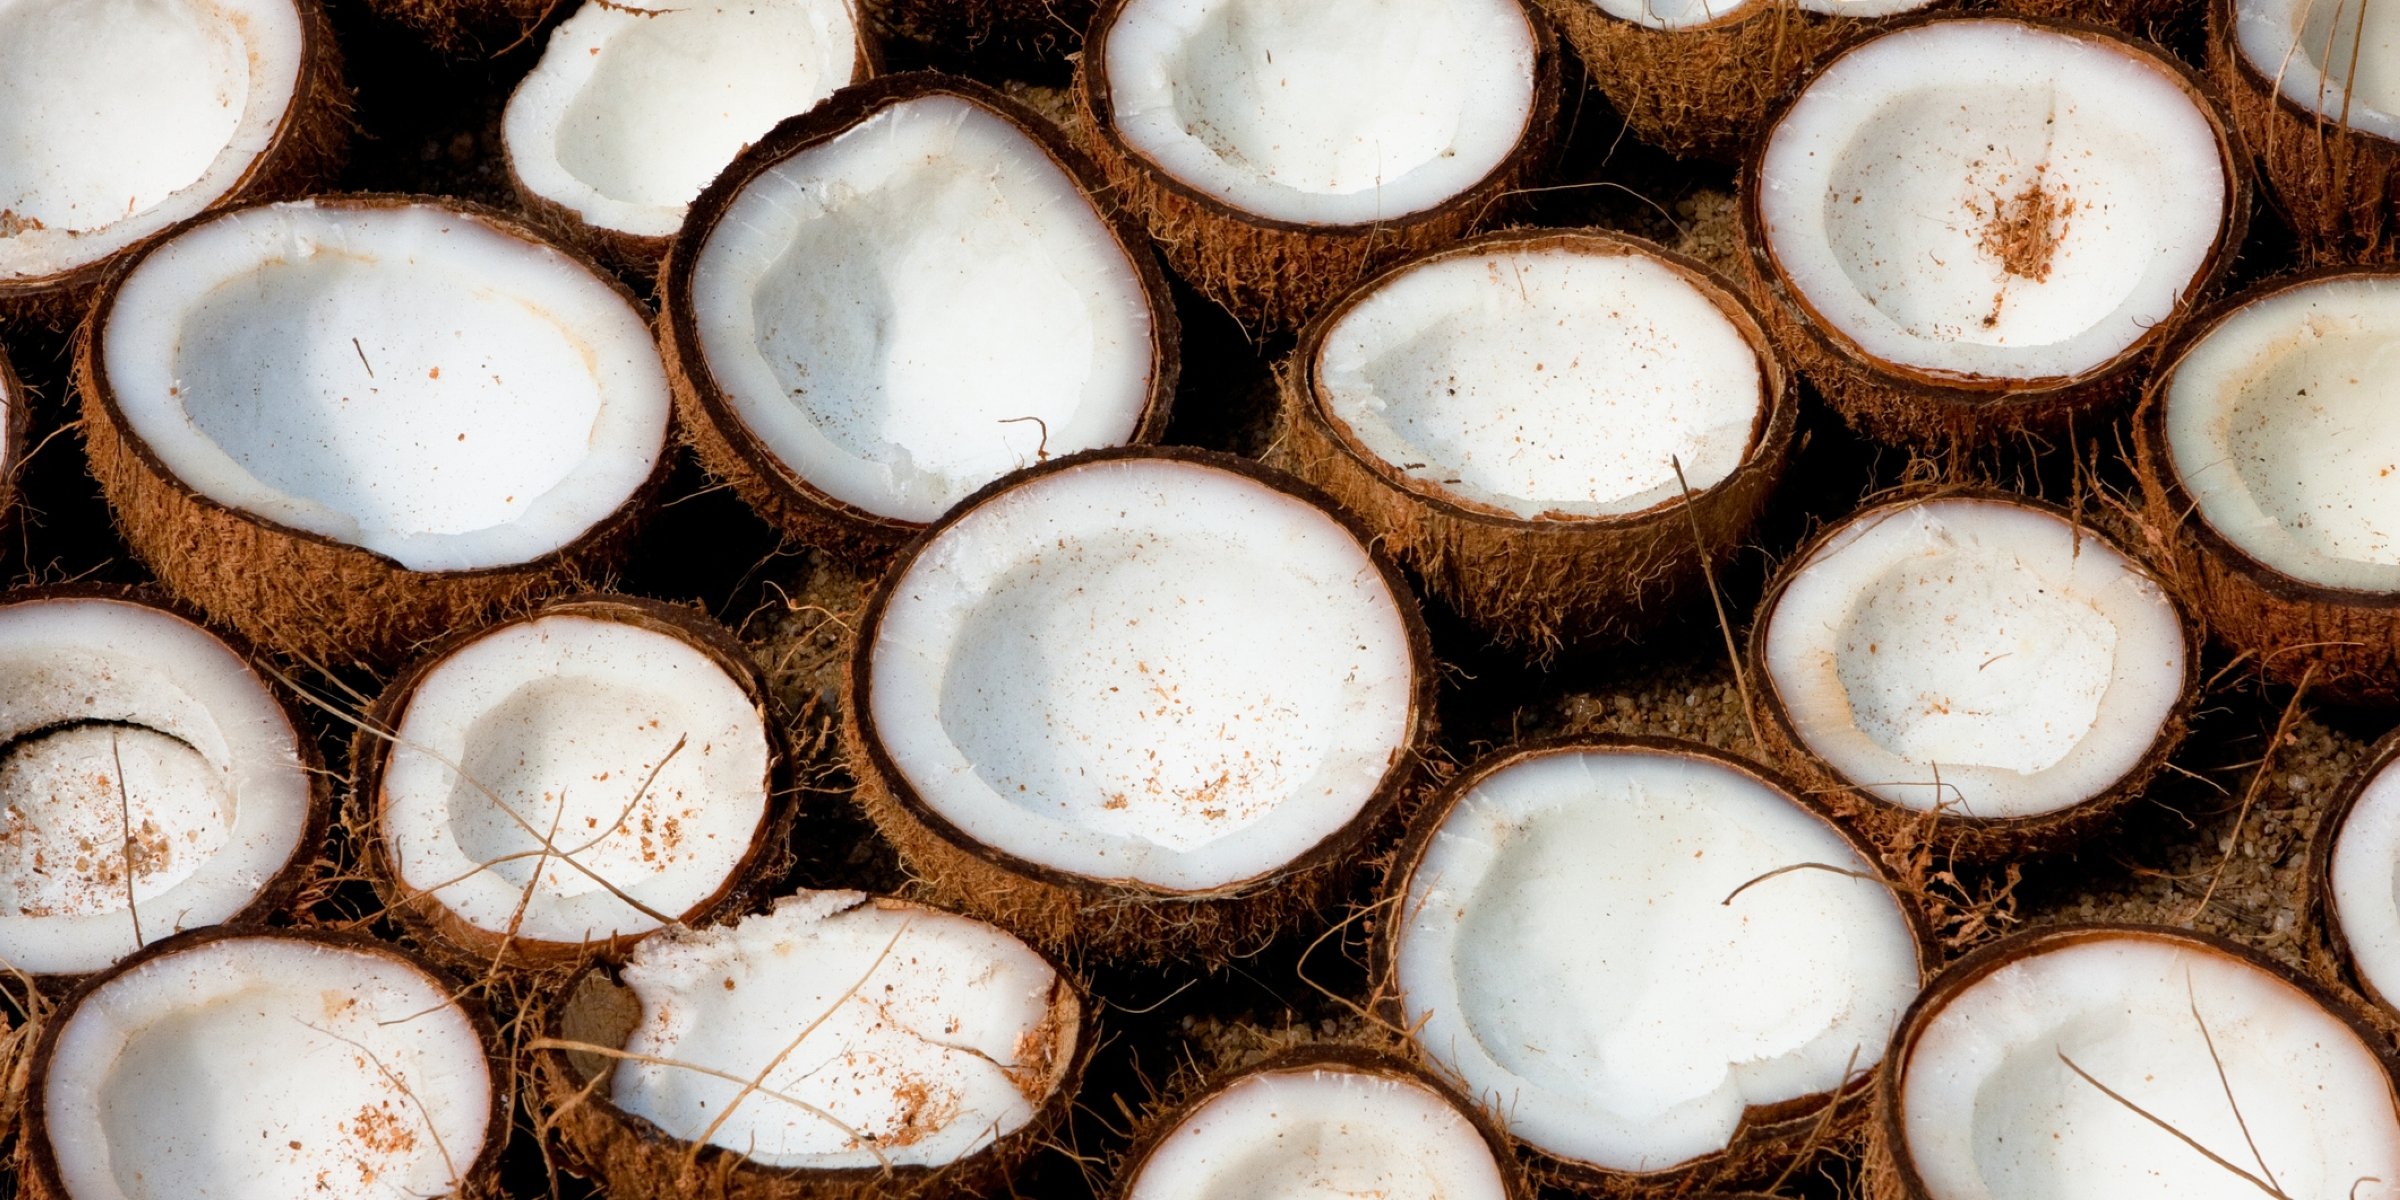 Filipino Scientists Say Virgin Coconut Oil Helps Destroy COVID-19